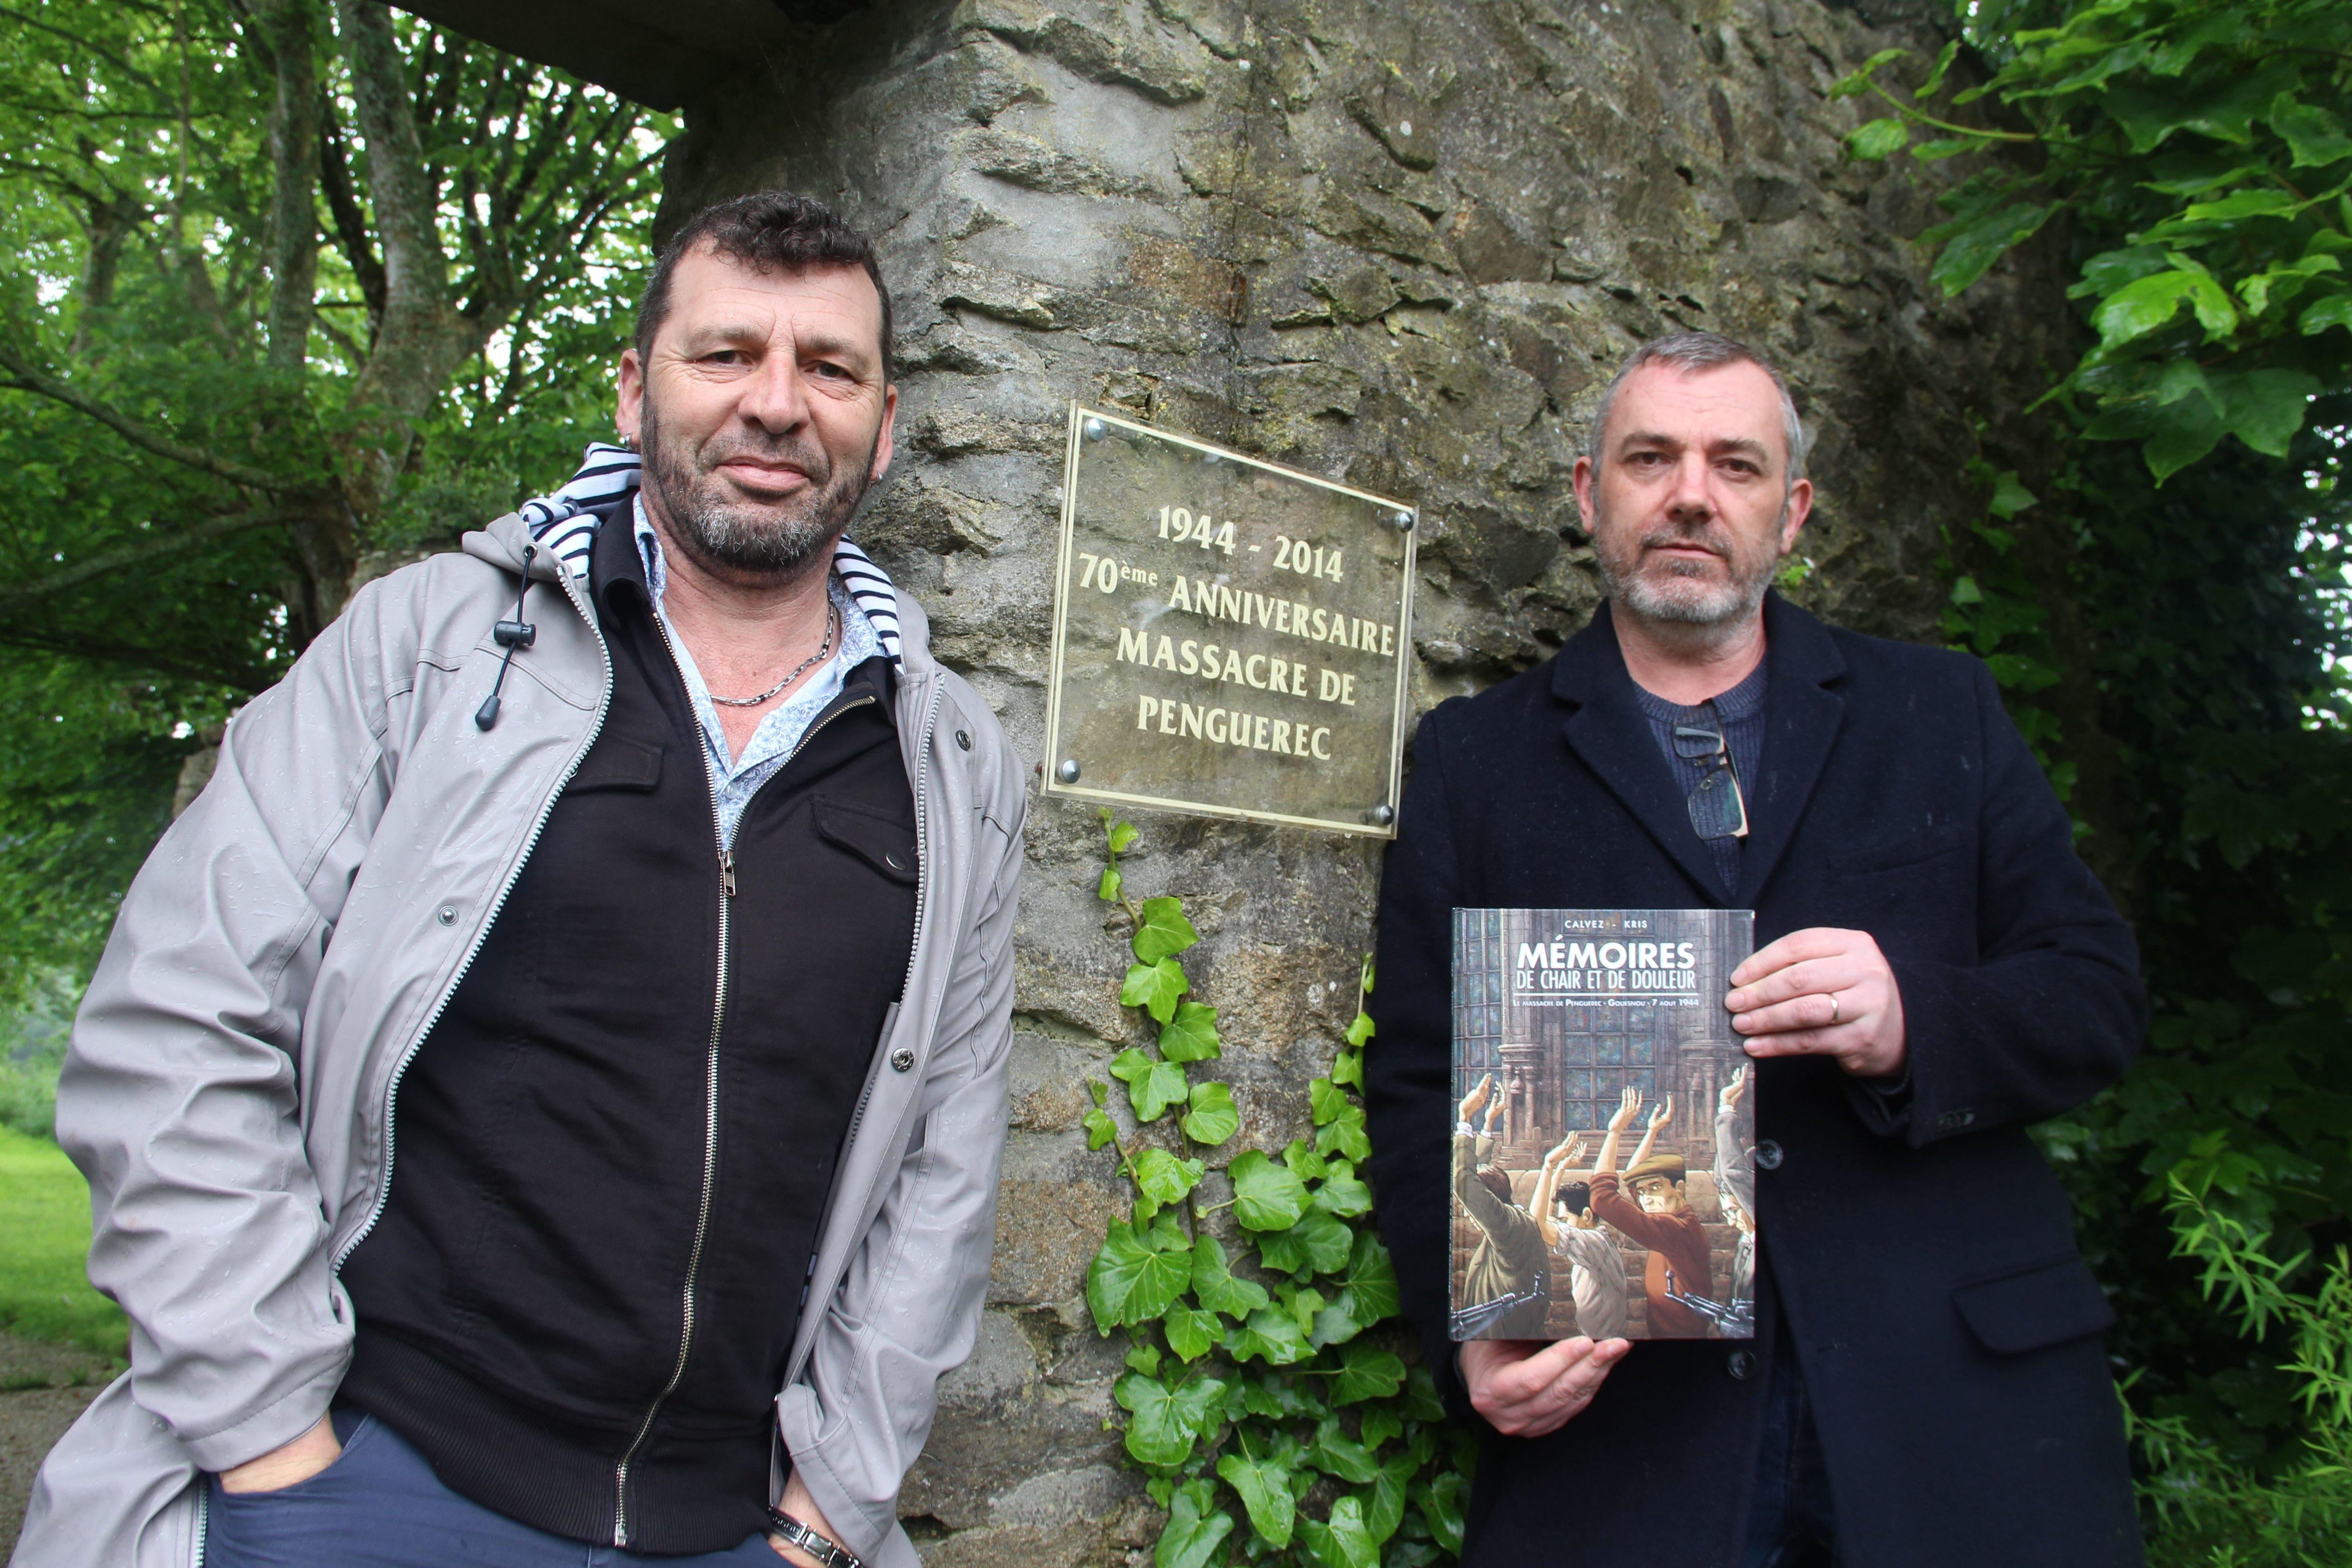 Sur une demande de la mairie de Gouesnou, Kris et Florent Calvez, deux auteurs de BD, viennent de publier un ouvrage retraçant le massacre de Penguérec. LP/Nora Moreau